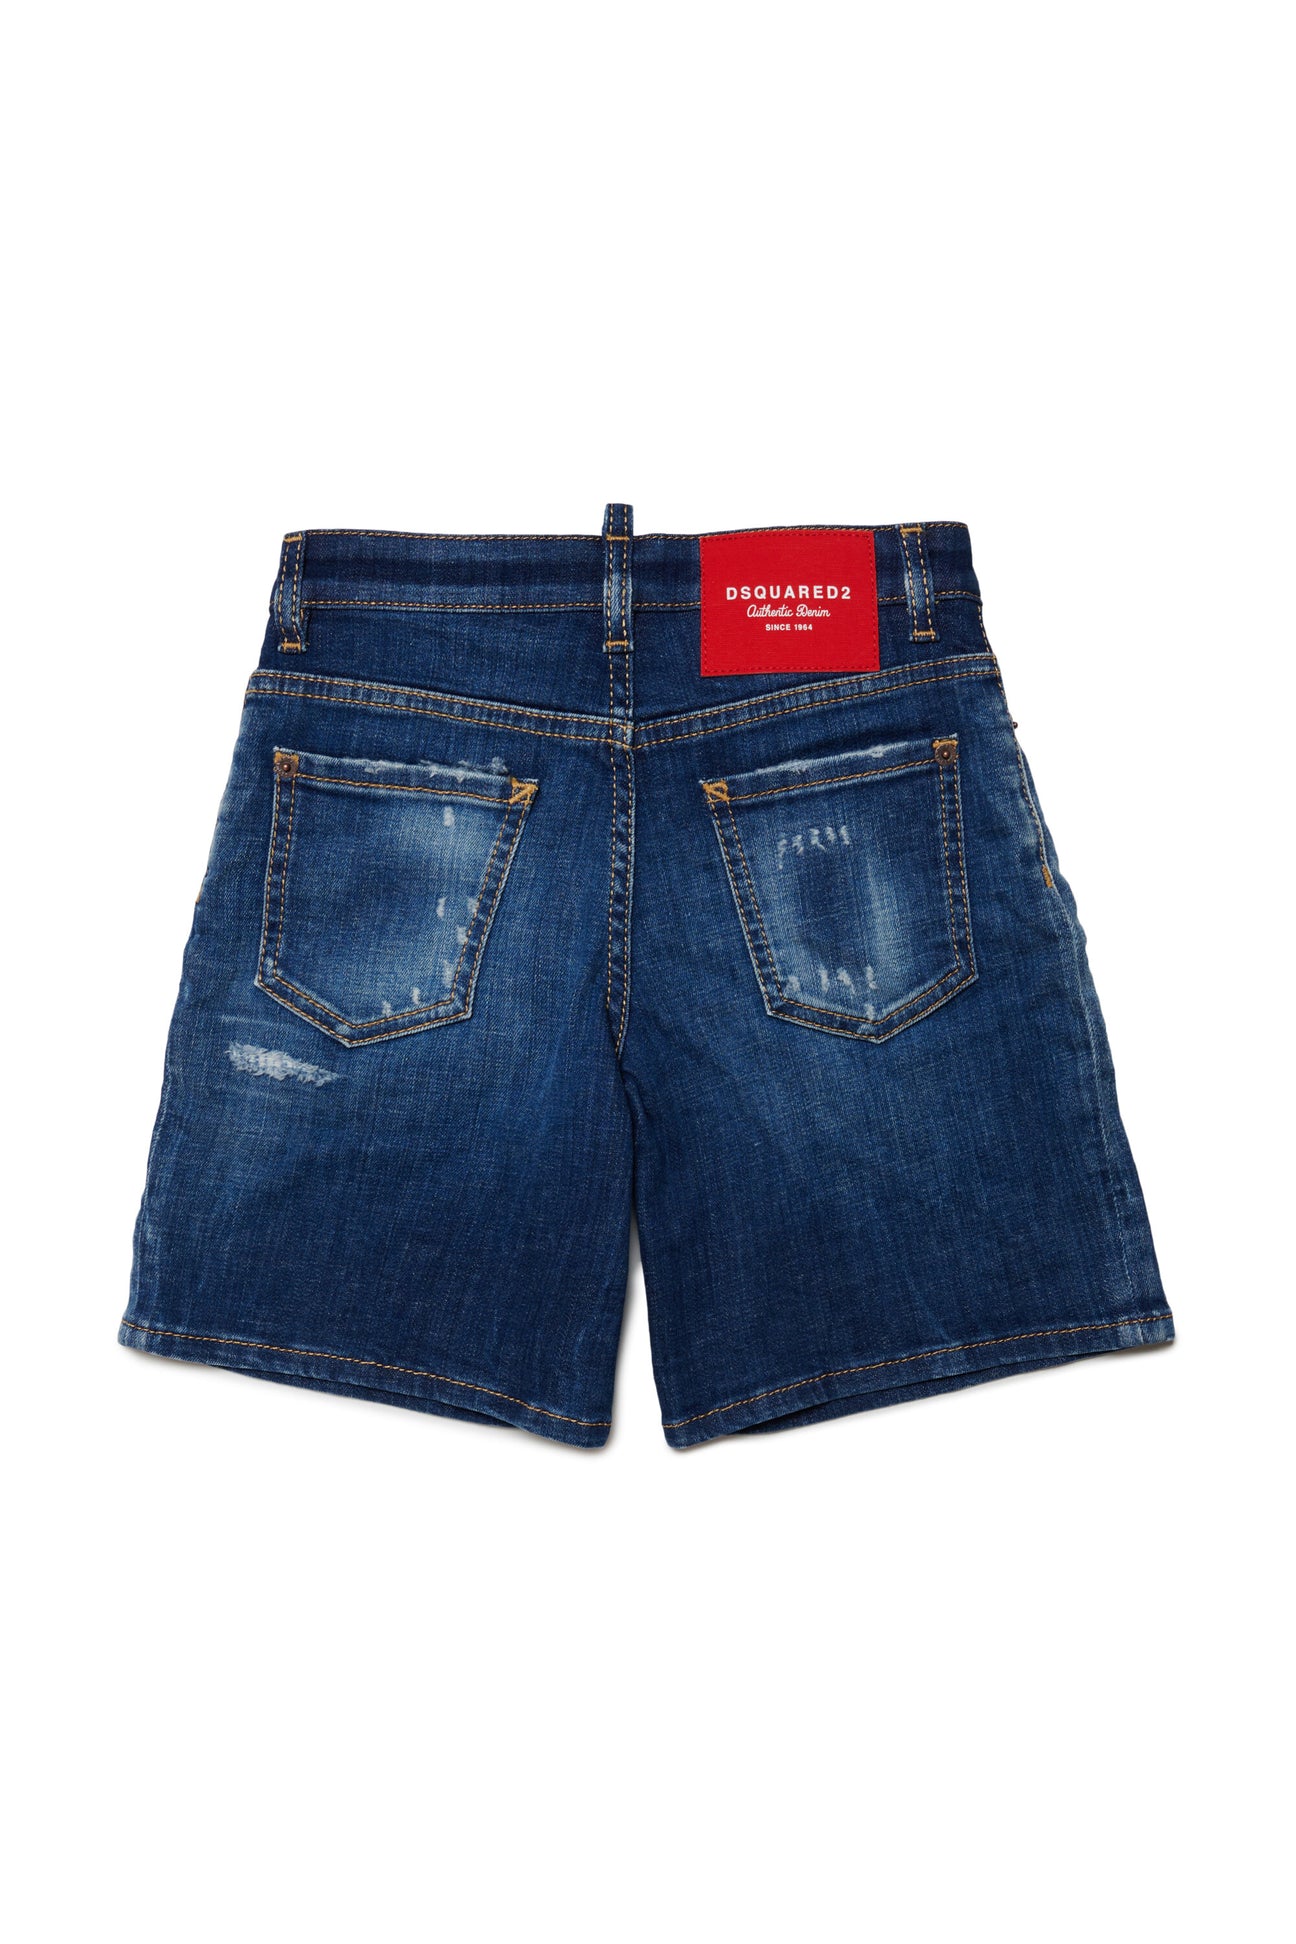 Pantalones cortos en denim azul degradado con rotos Pantalones cortos en denim azul degradado con rotos